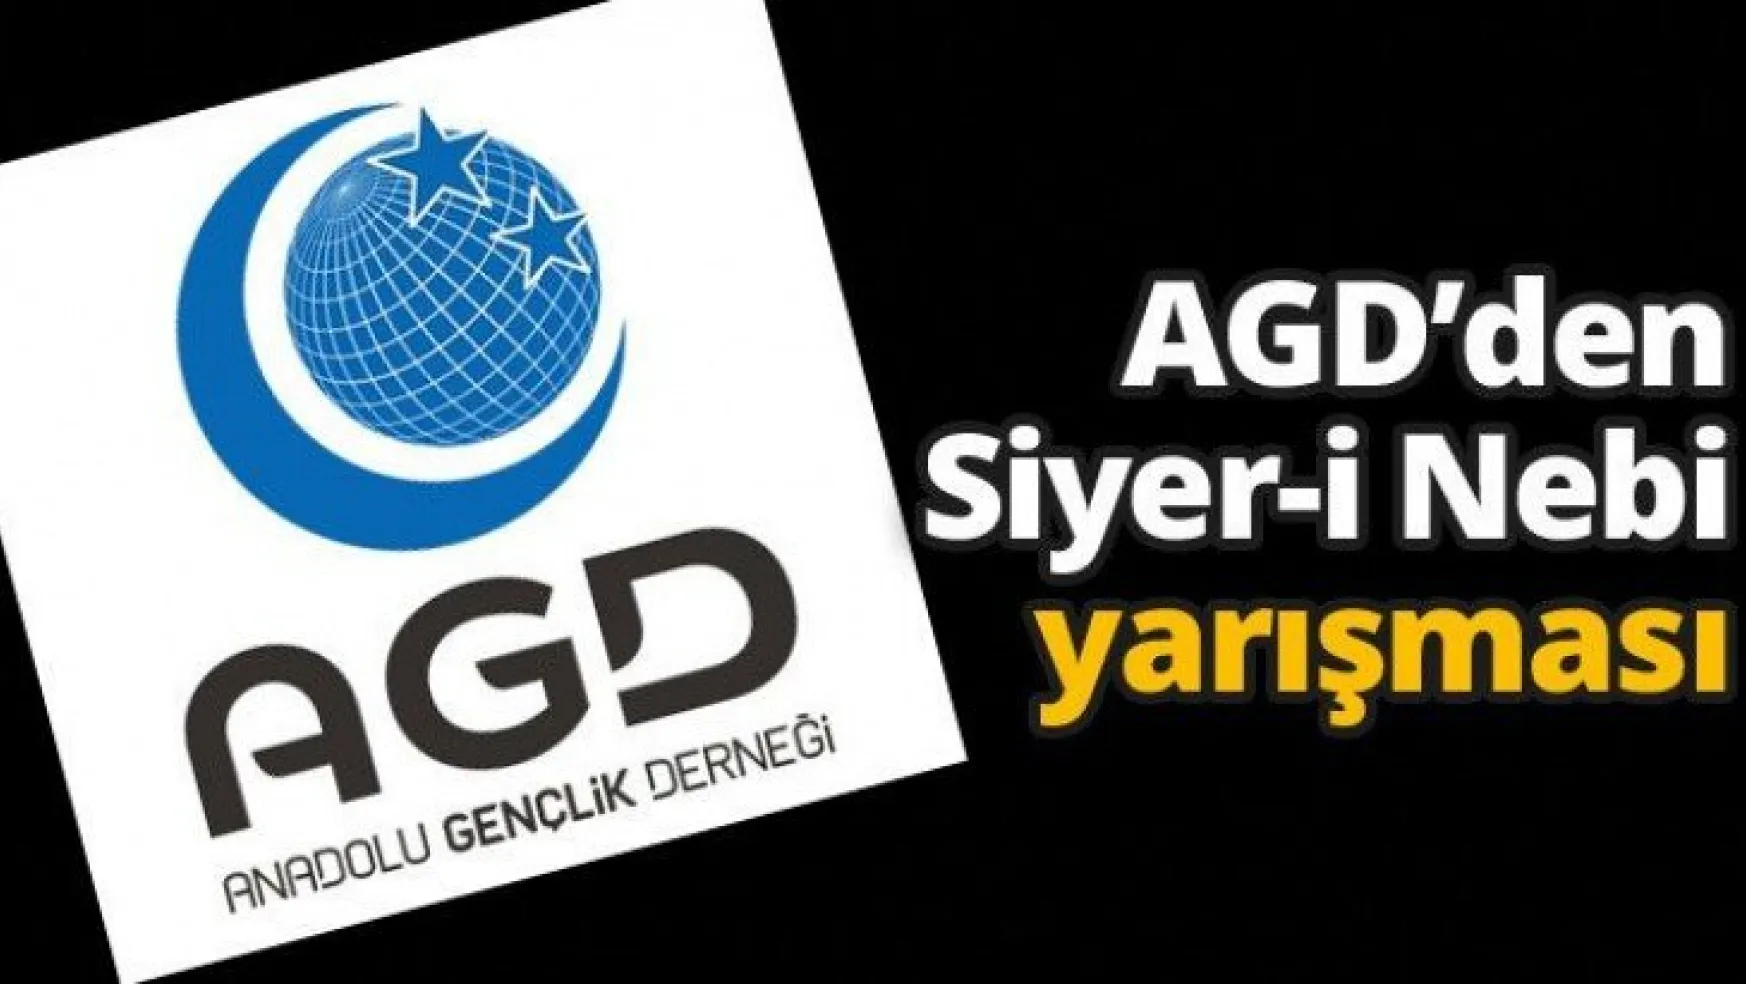 AGD'den Siyer-i Nebi yarışması